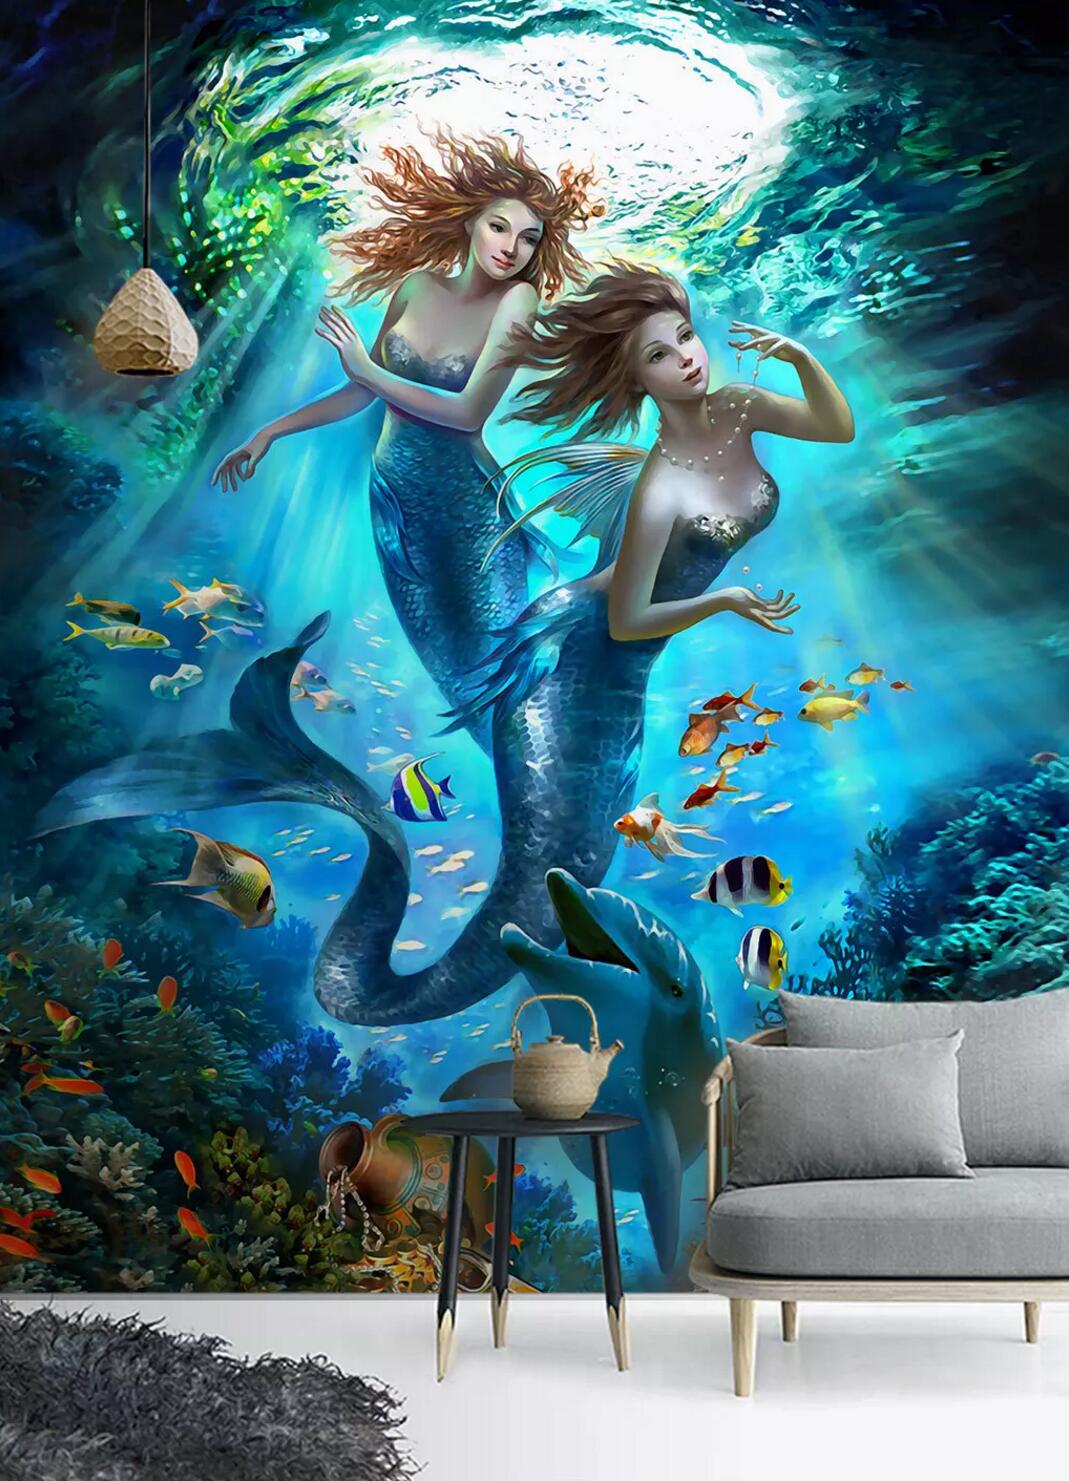 3D Underwater Mermaid WC836 Wall Murals